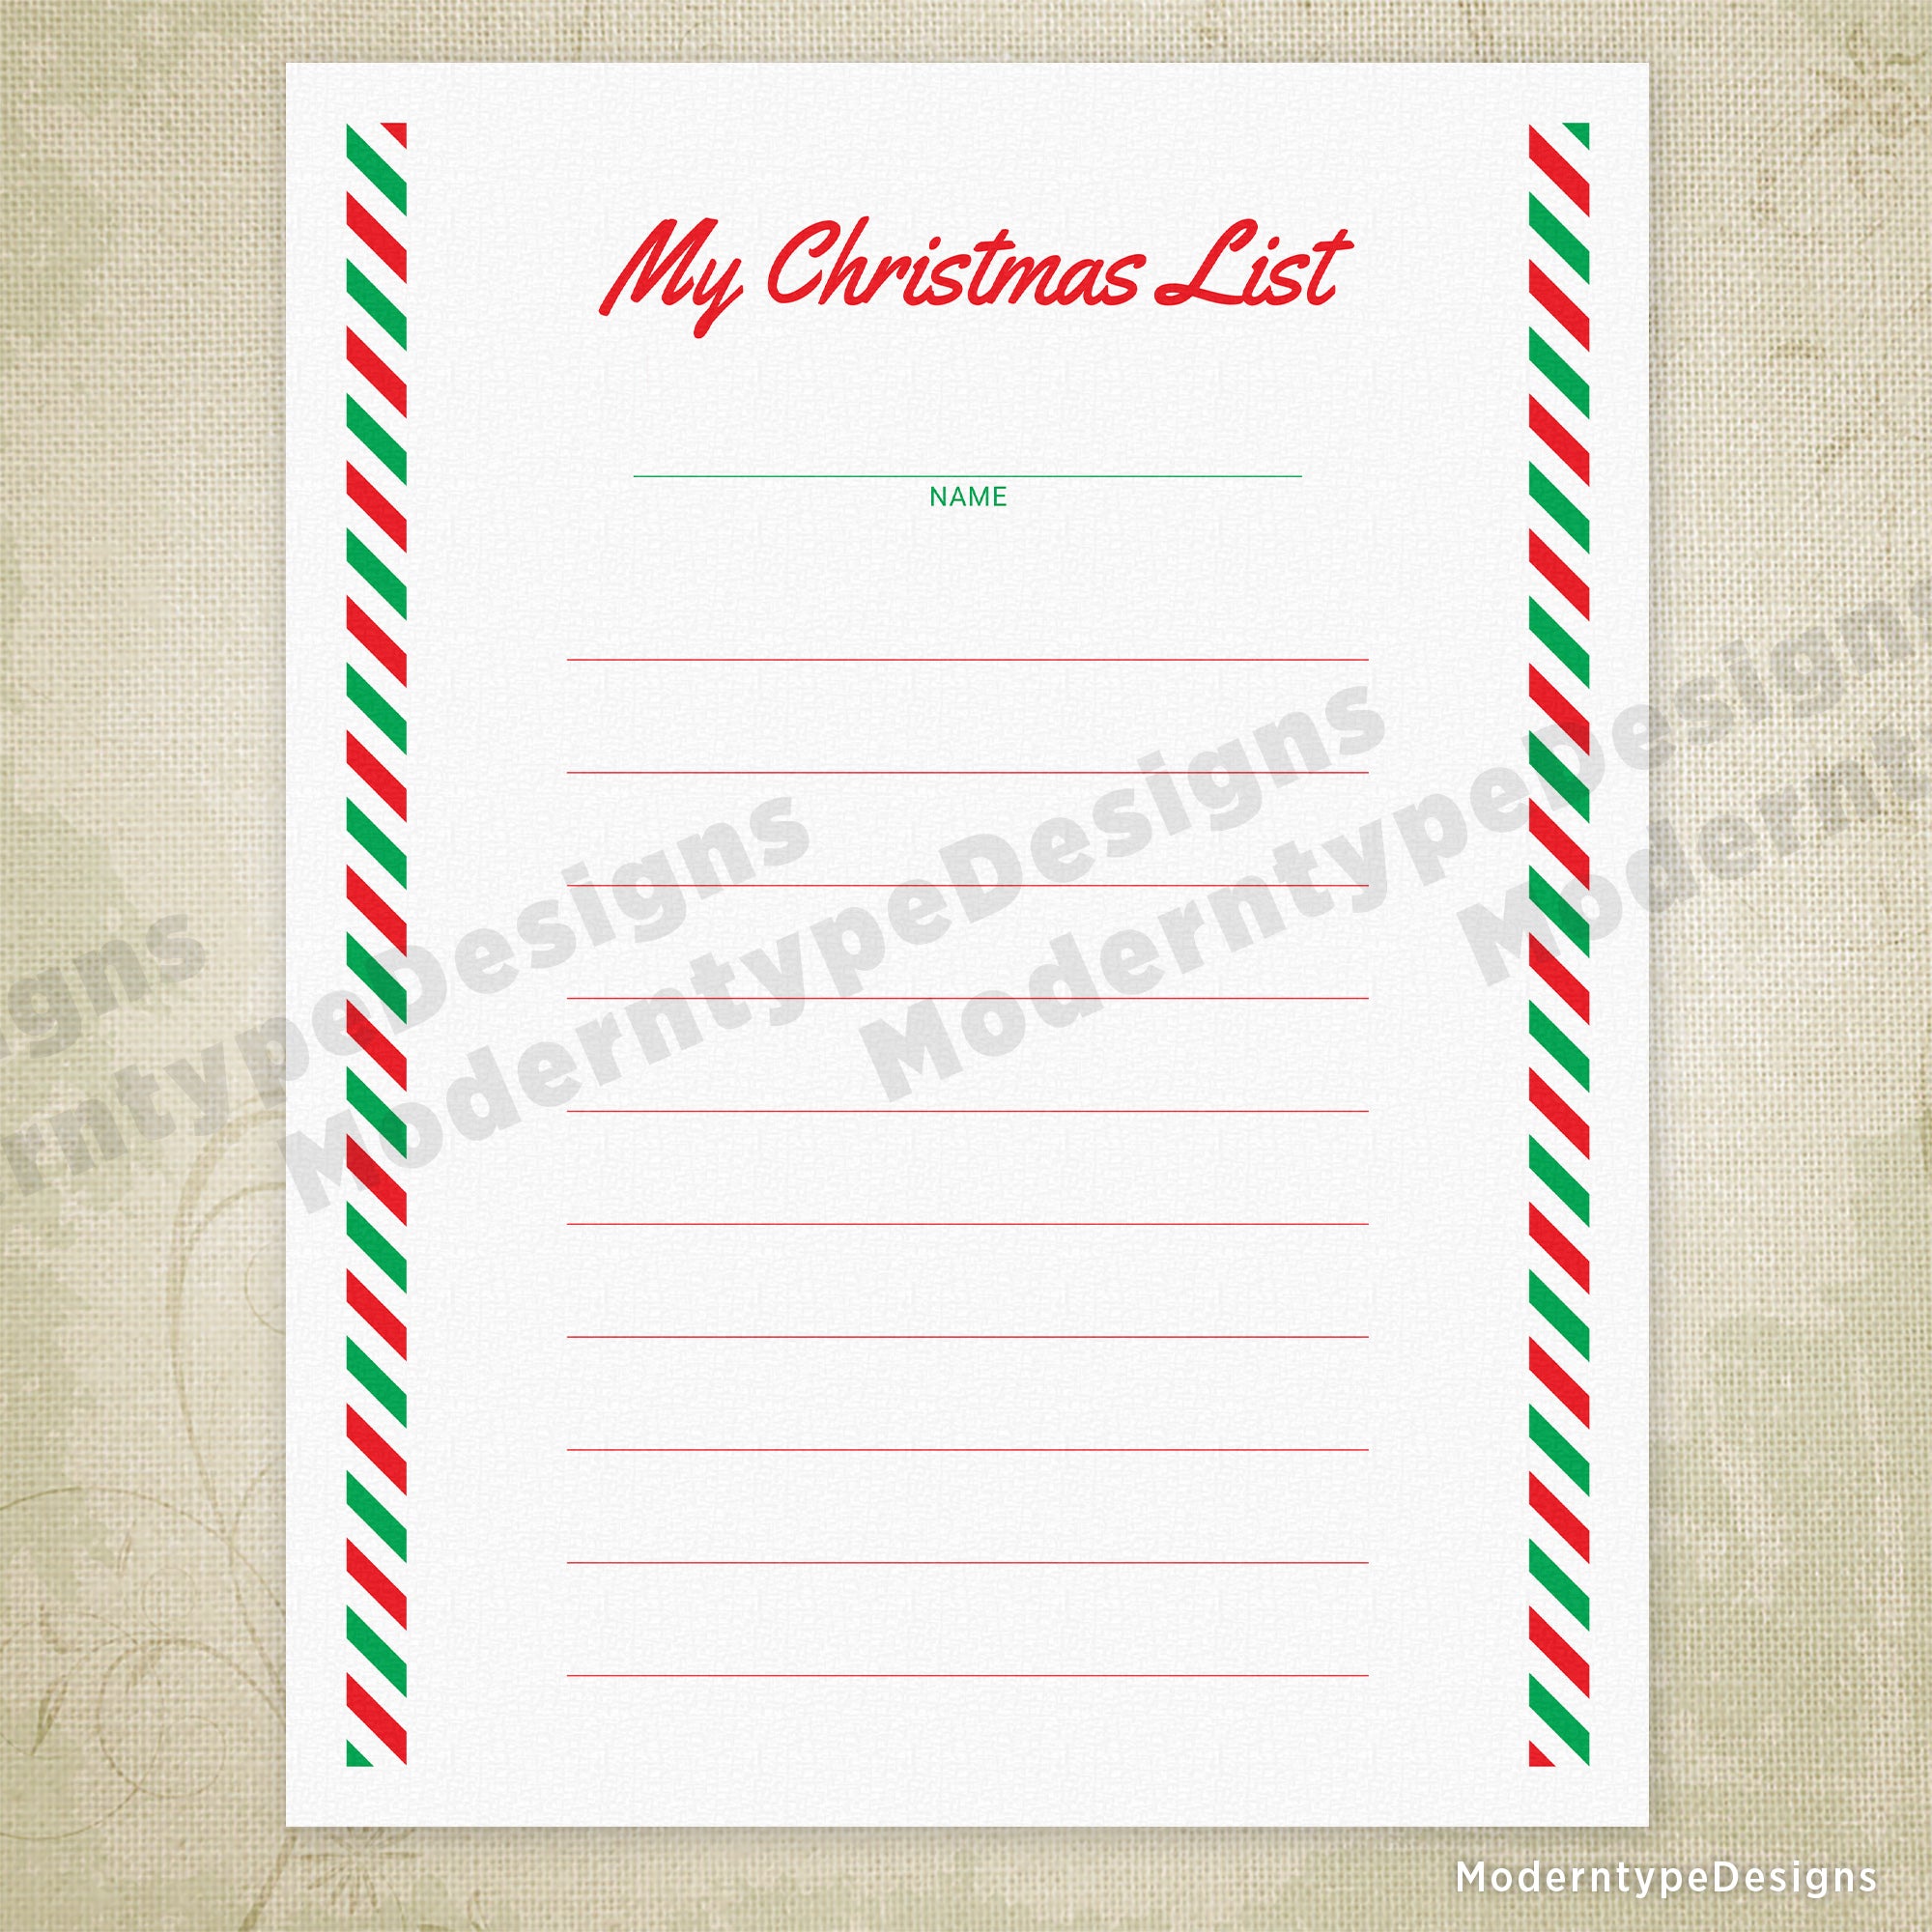 My Christmas List Printable